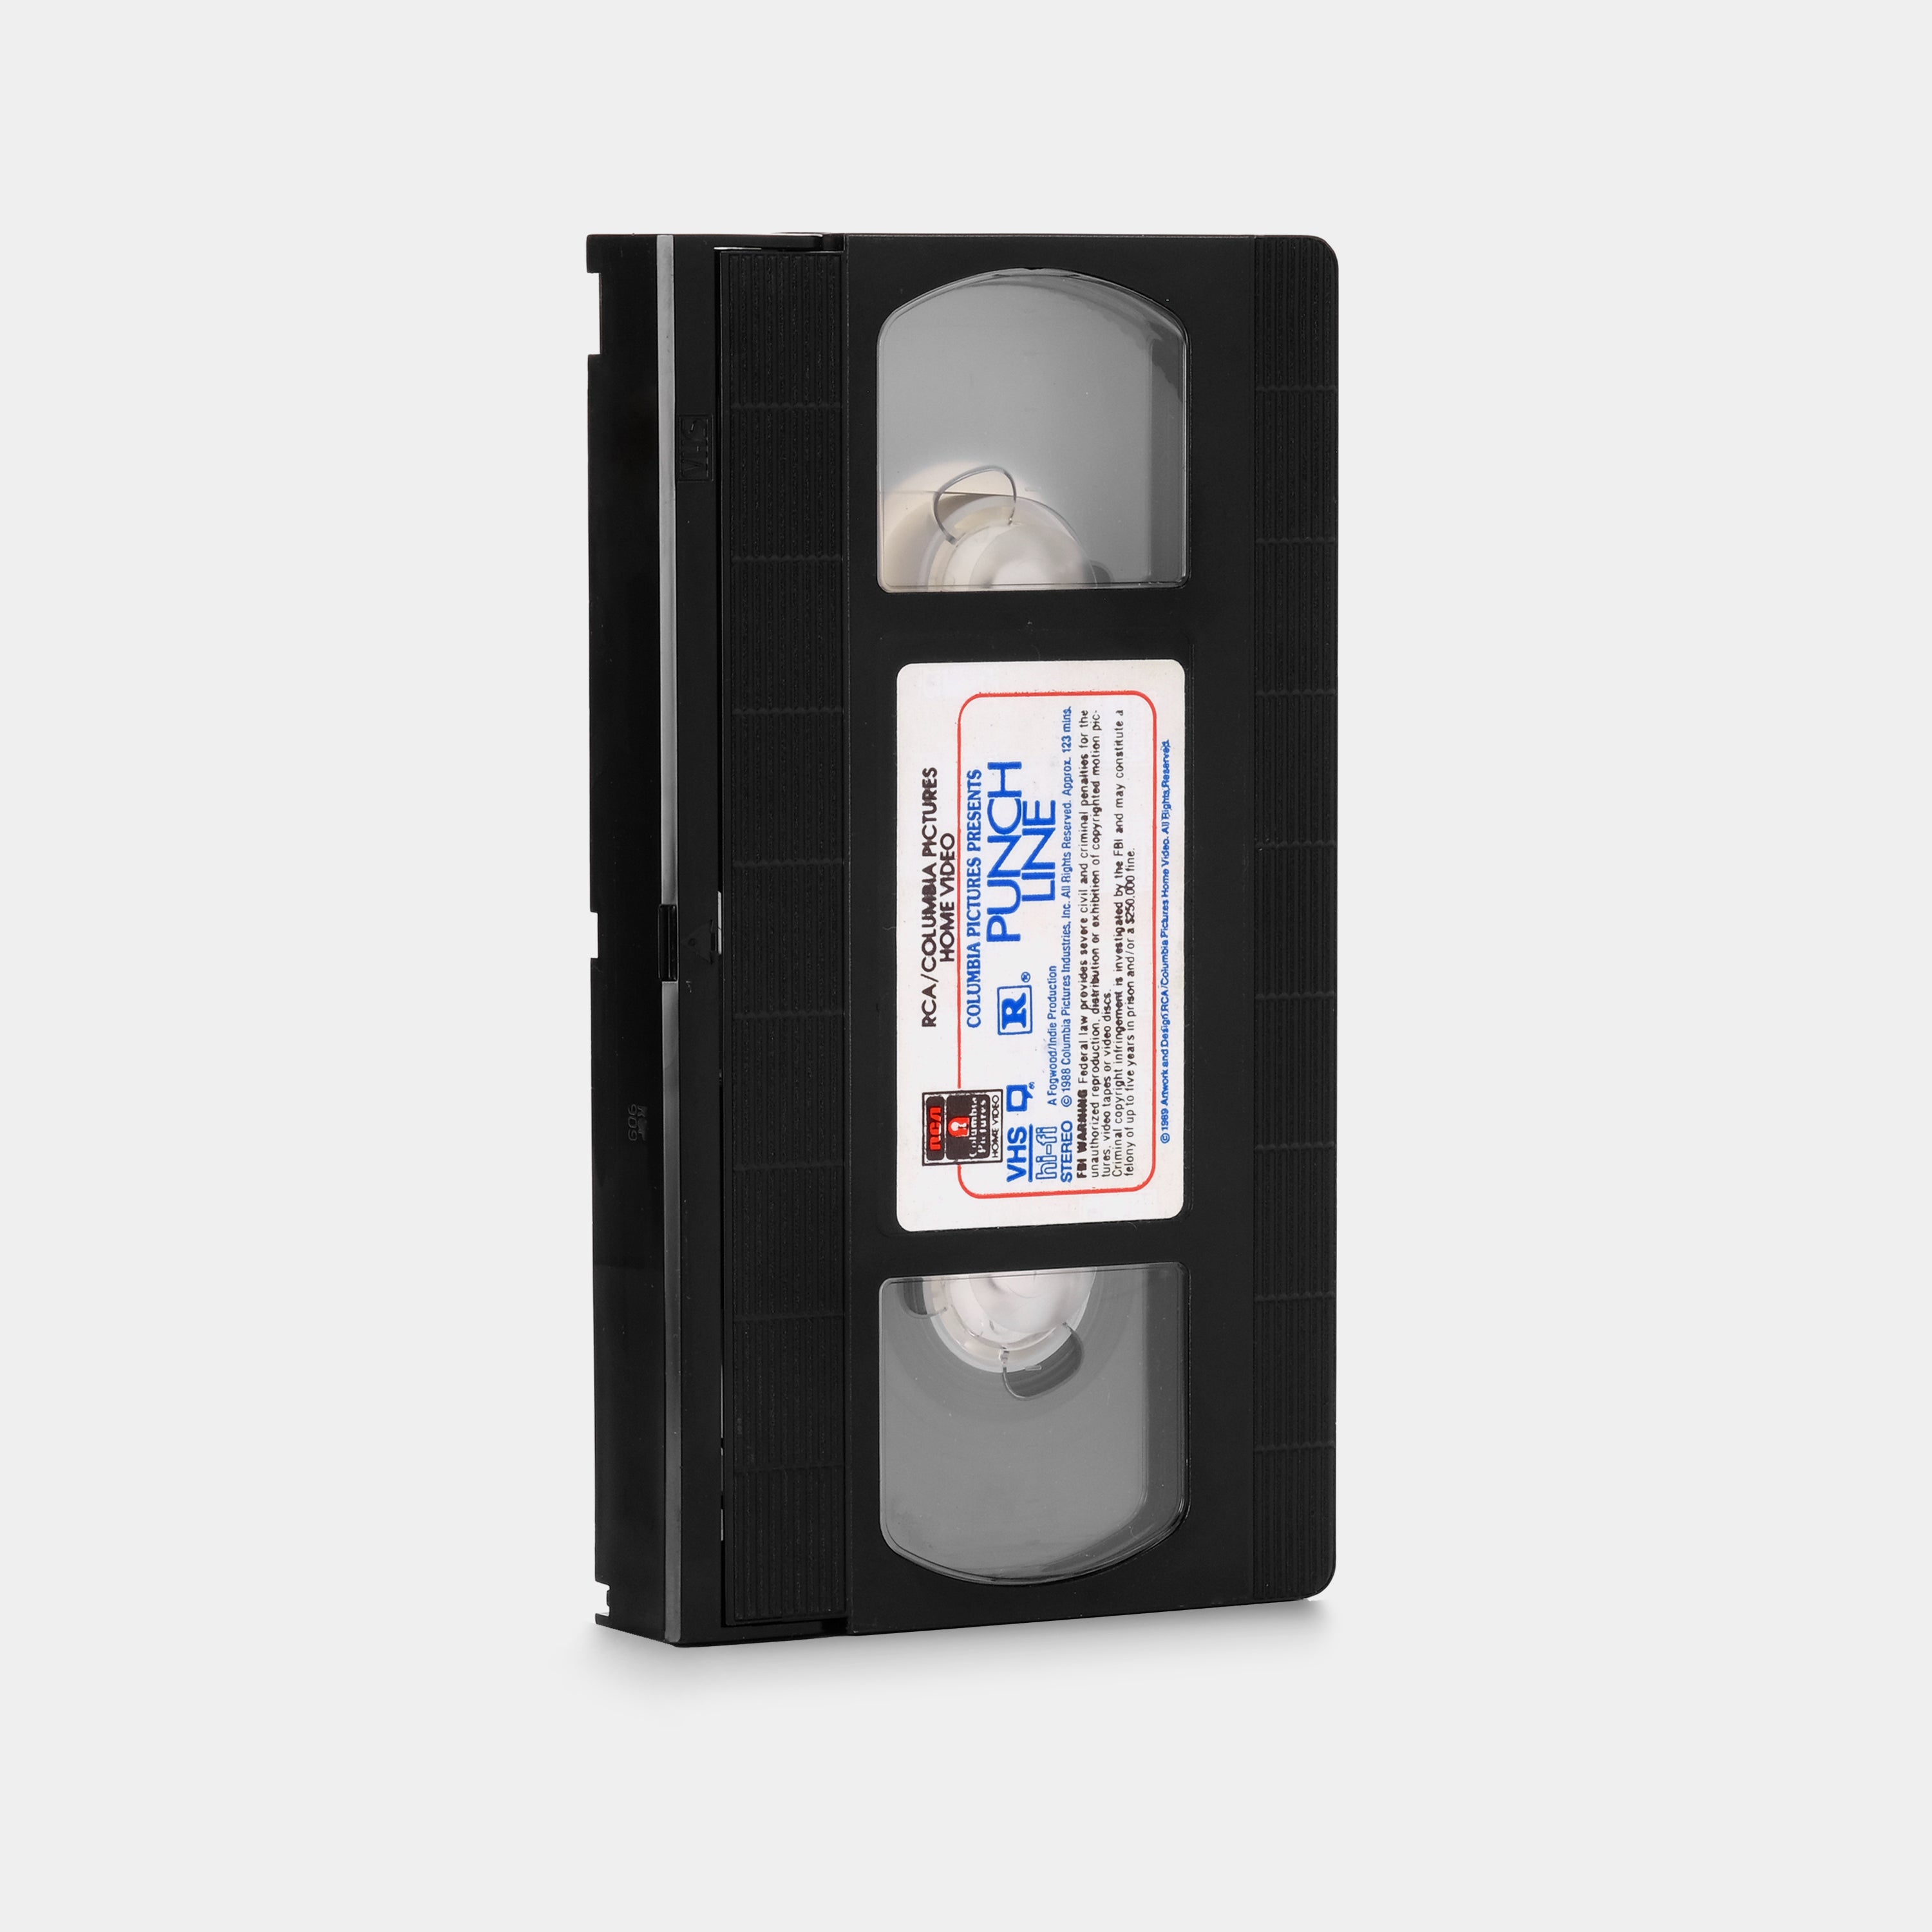 Punchline VHS Tape